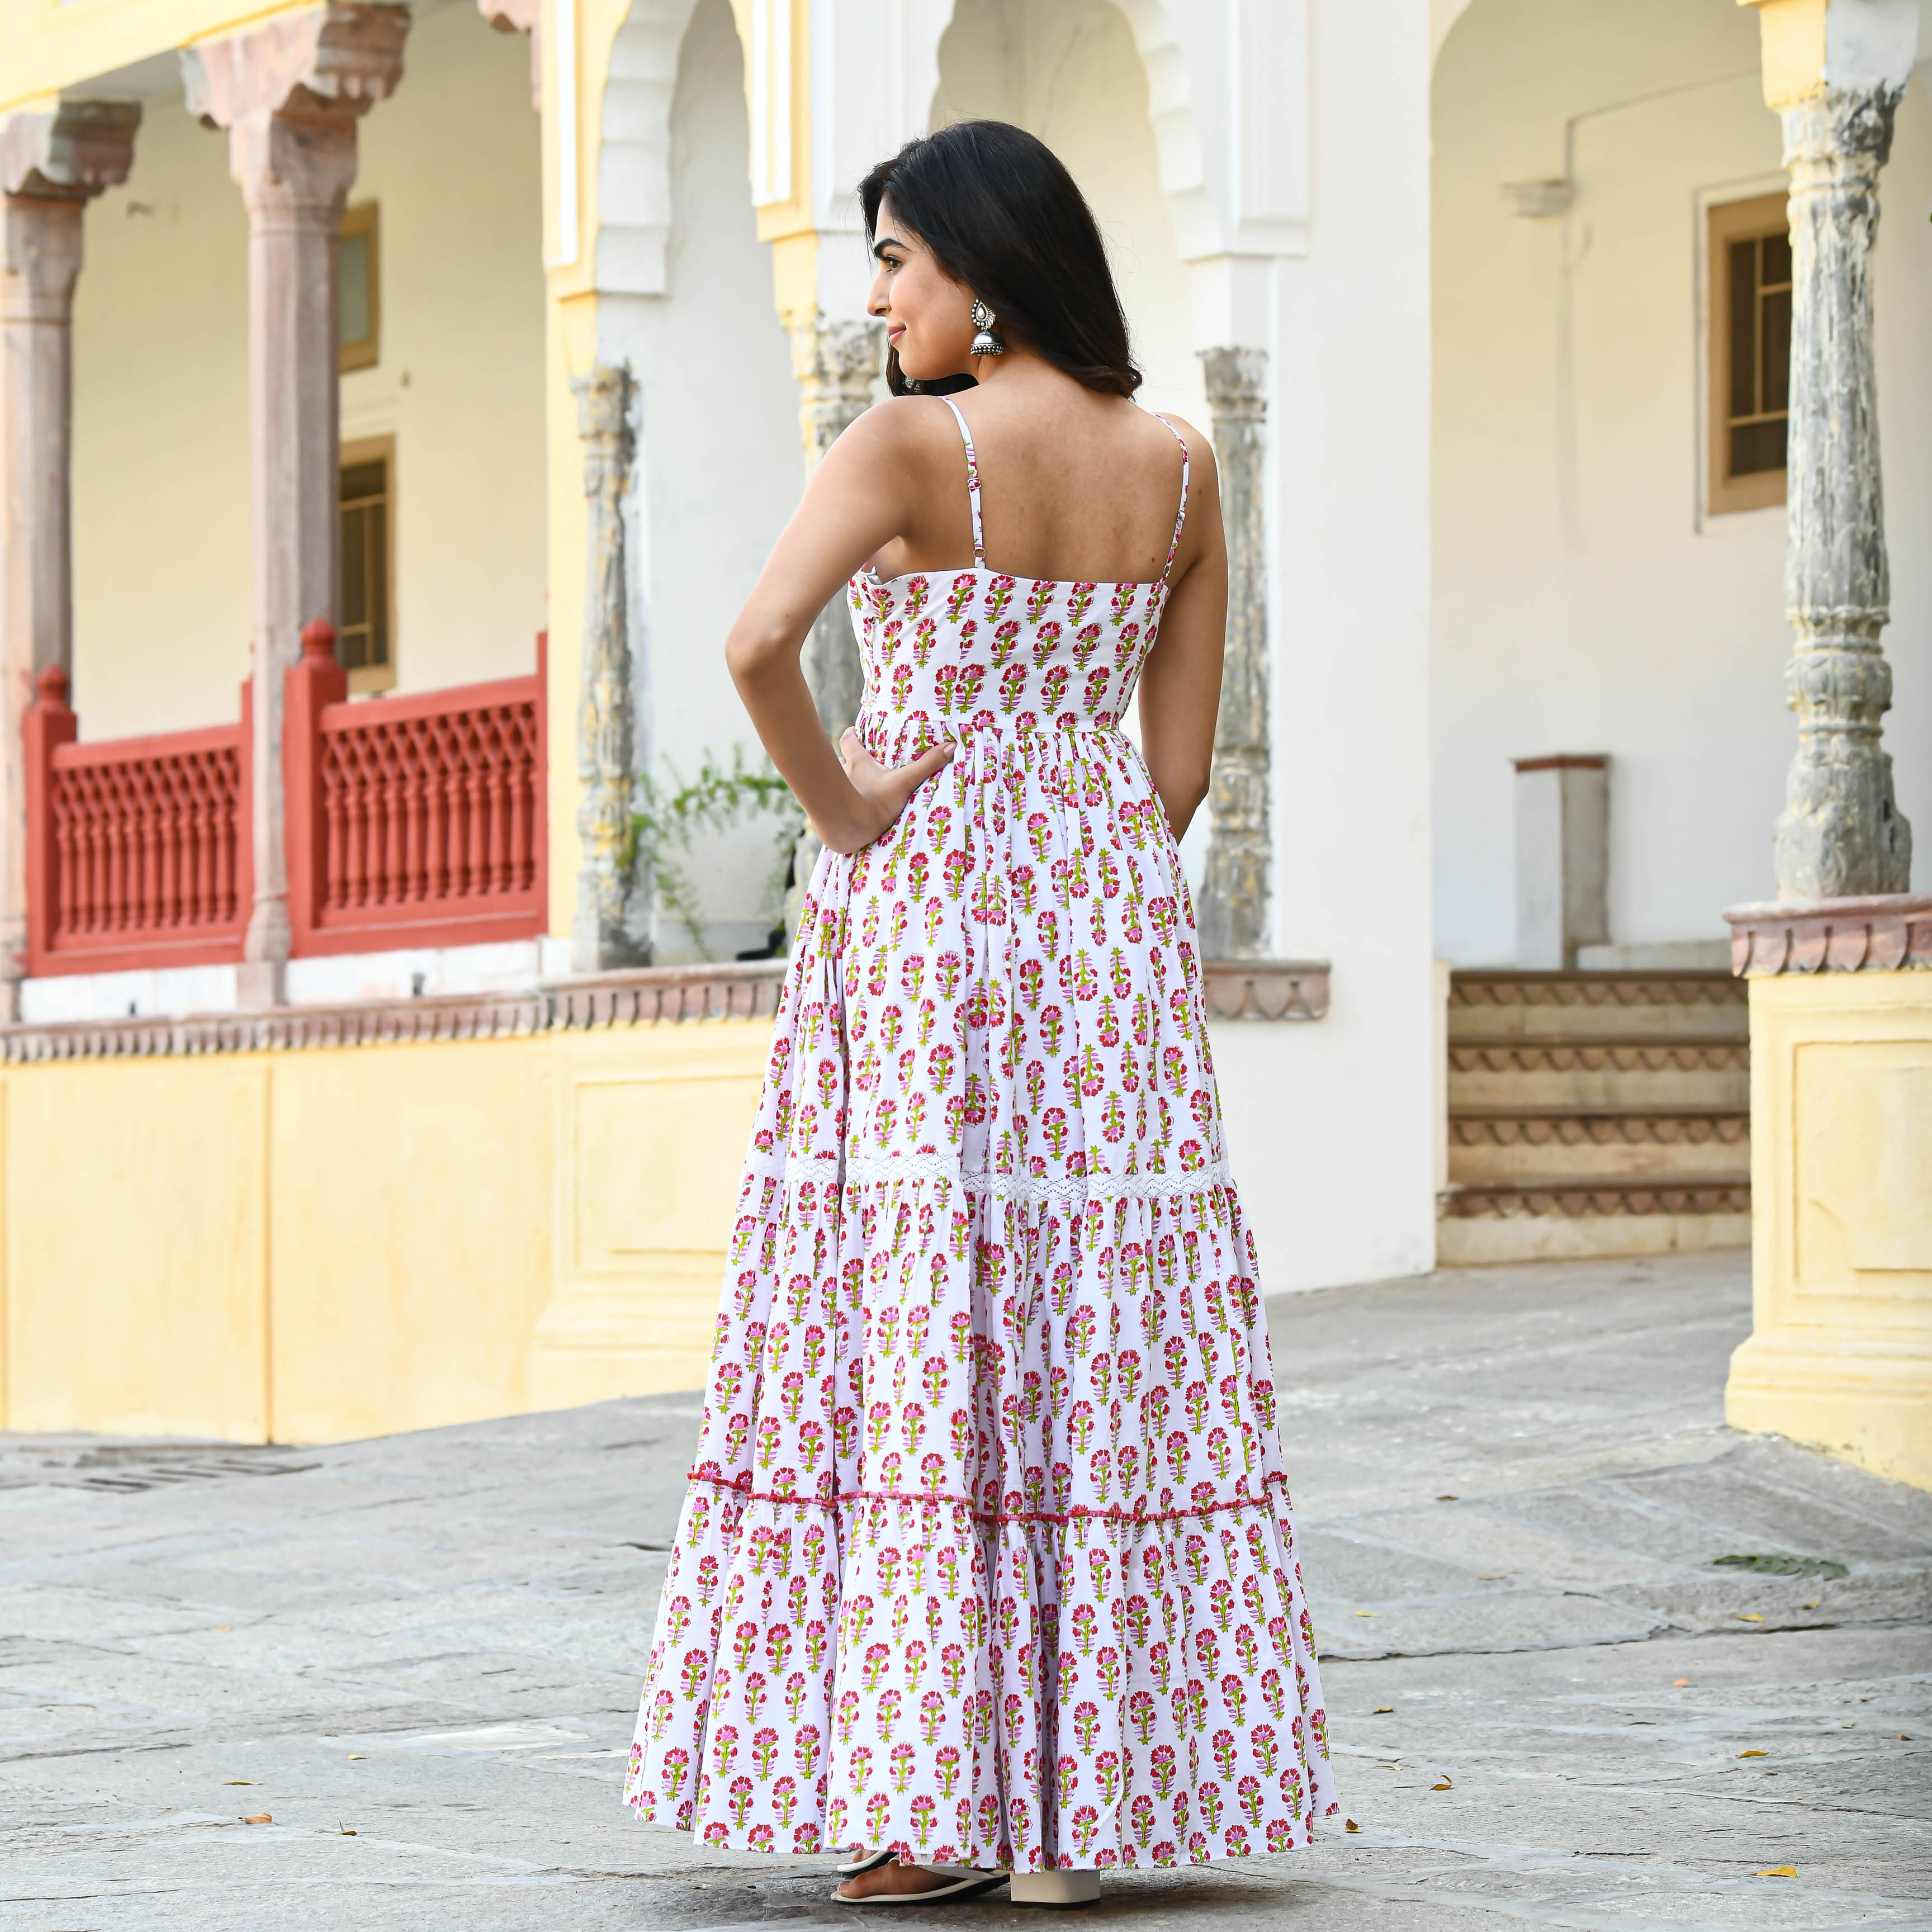 Small Butta print Cotton Dress for women online